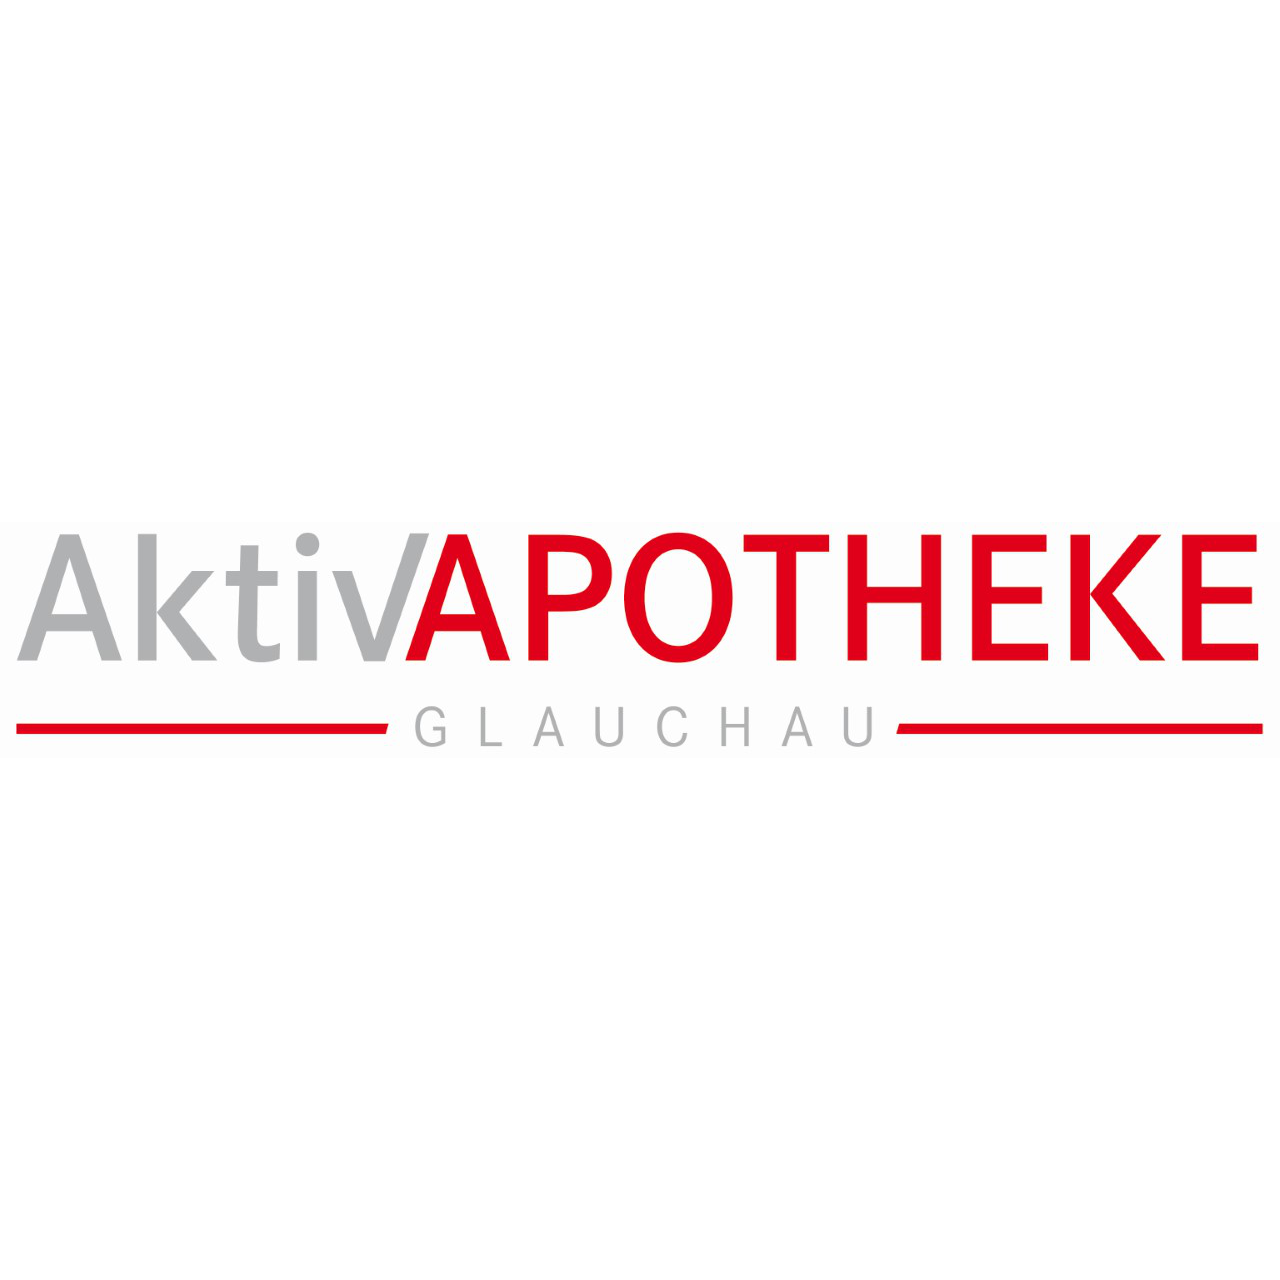 Aktiv-Apotheke in Glauchau - Logo